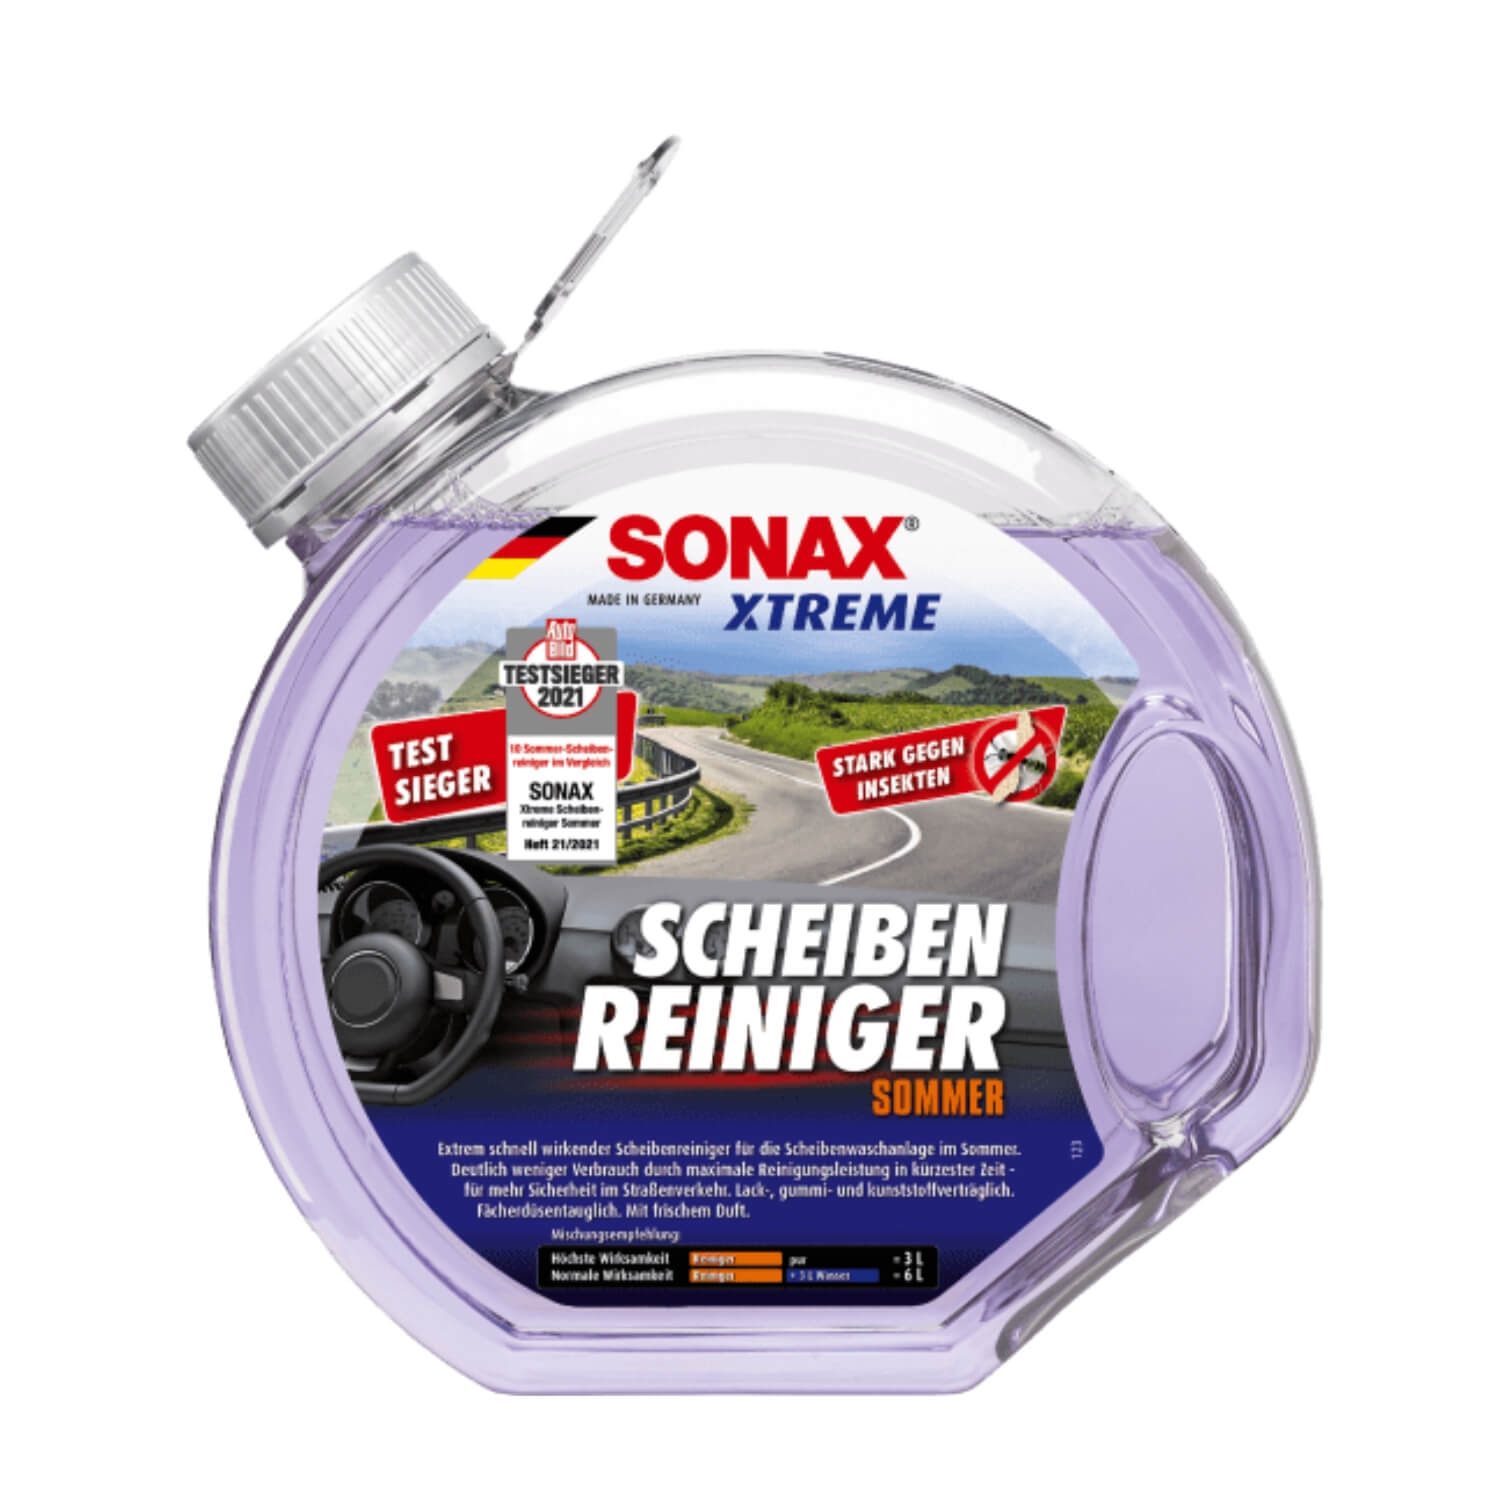 Scheibenklar & Frostschutz SONAX Gebrauchsfertig 2 l